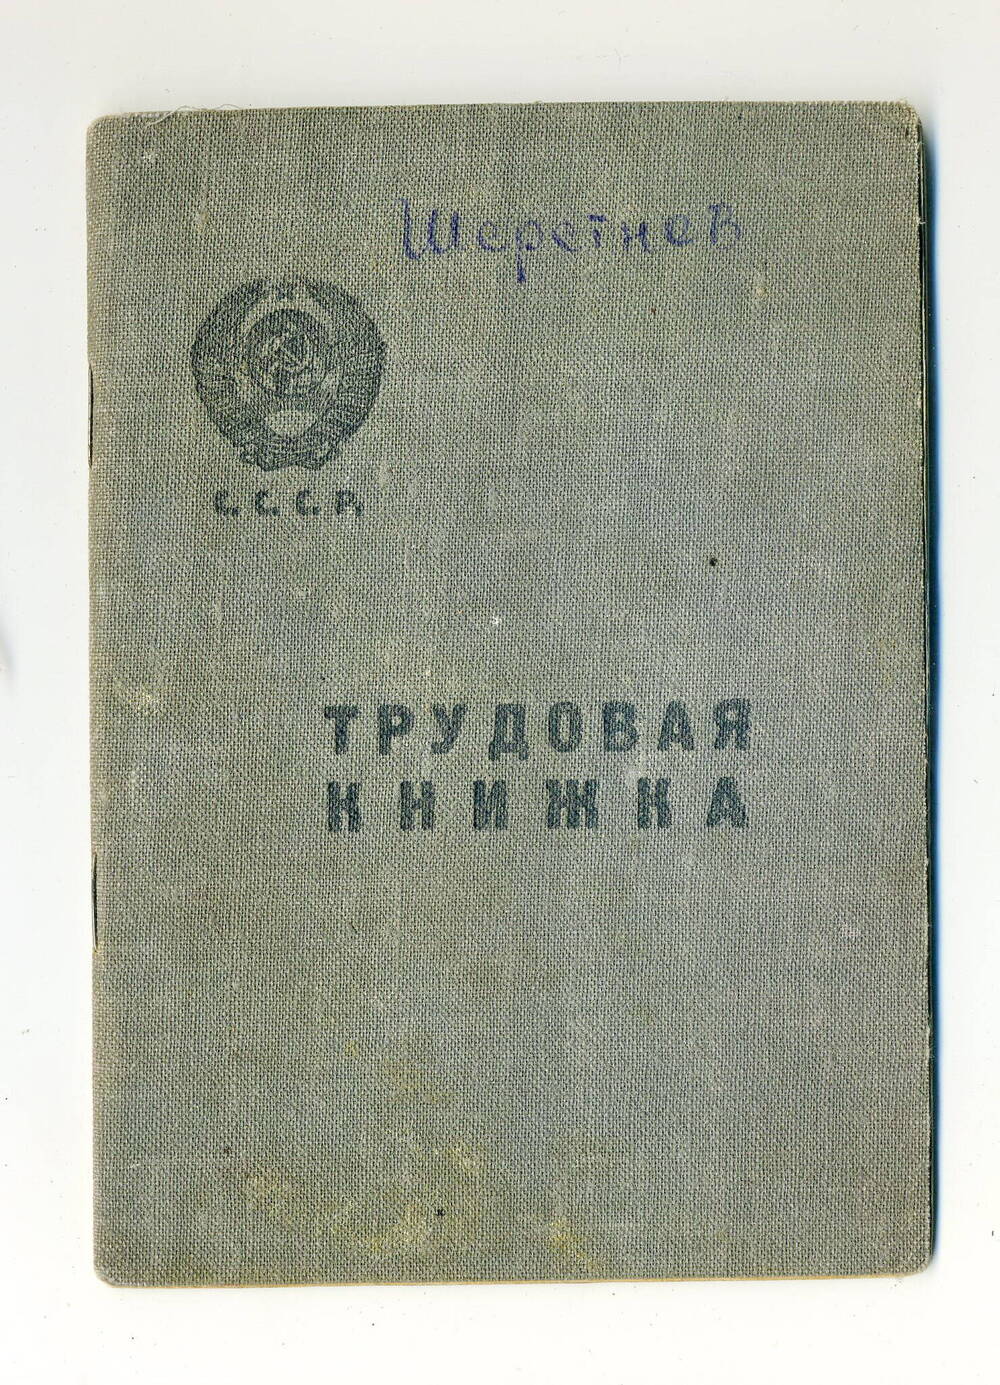 Трудовая книжка Шерстнева Н.Т., 1939-1951гг.